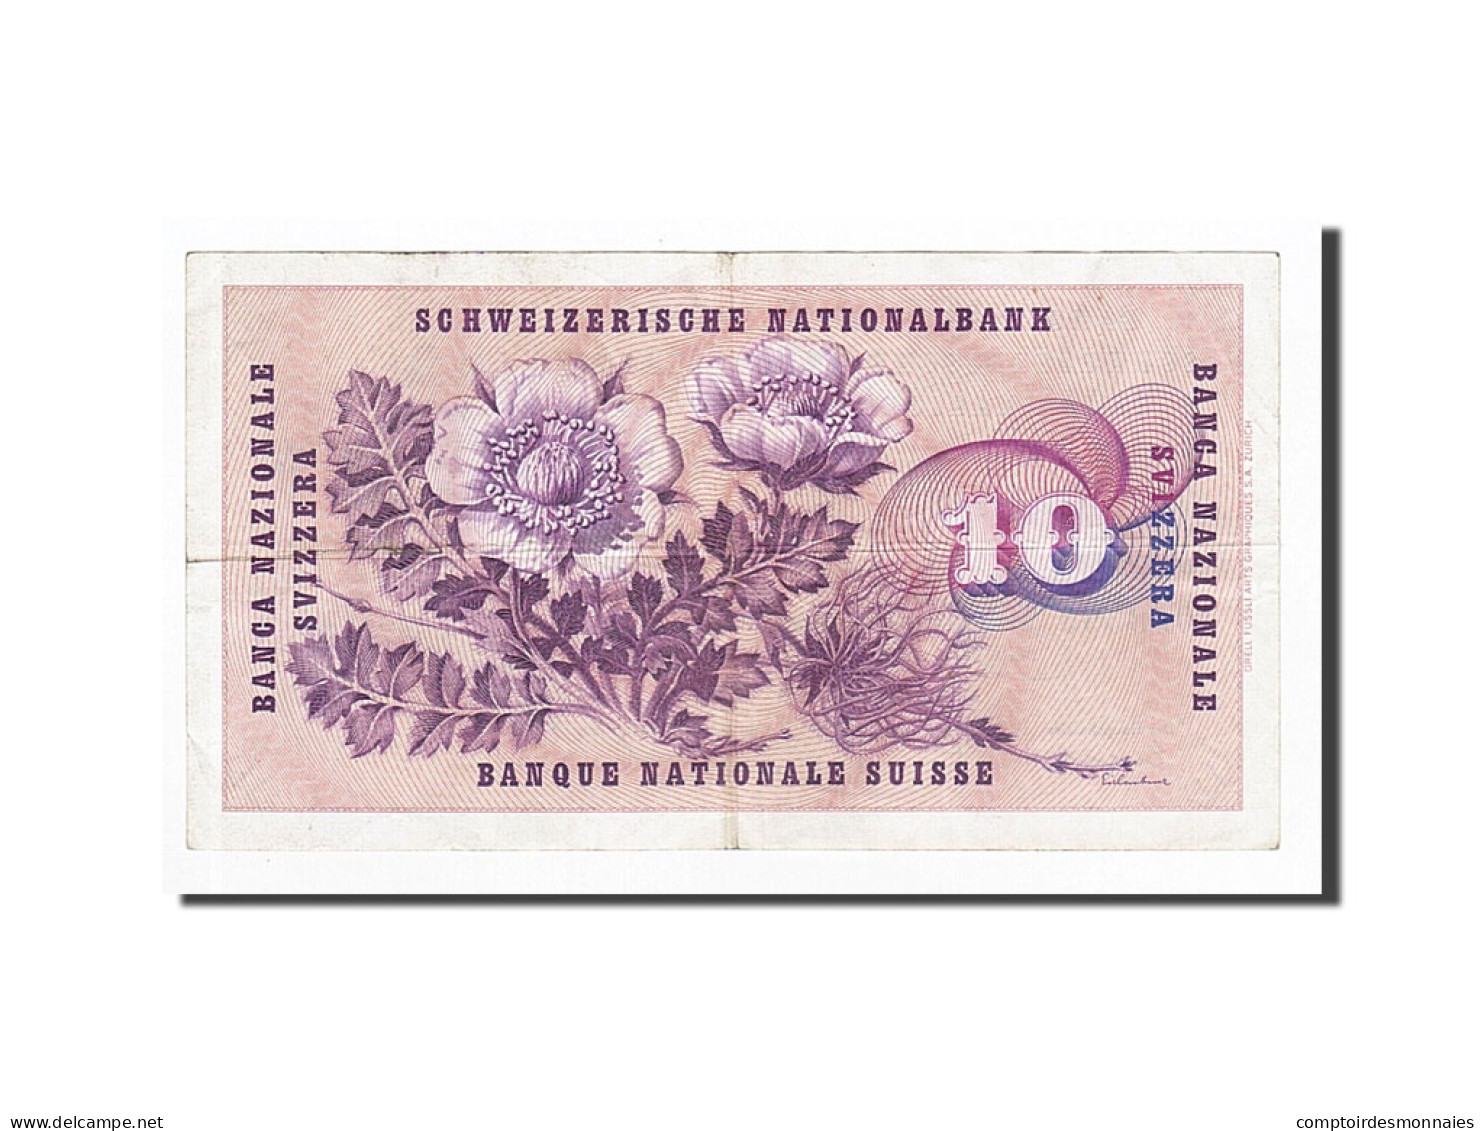 Billet, Suisse, 10 Franken, 1965-12-23, KM:45k, TTB - Schweiz